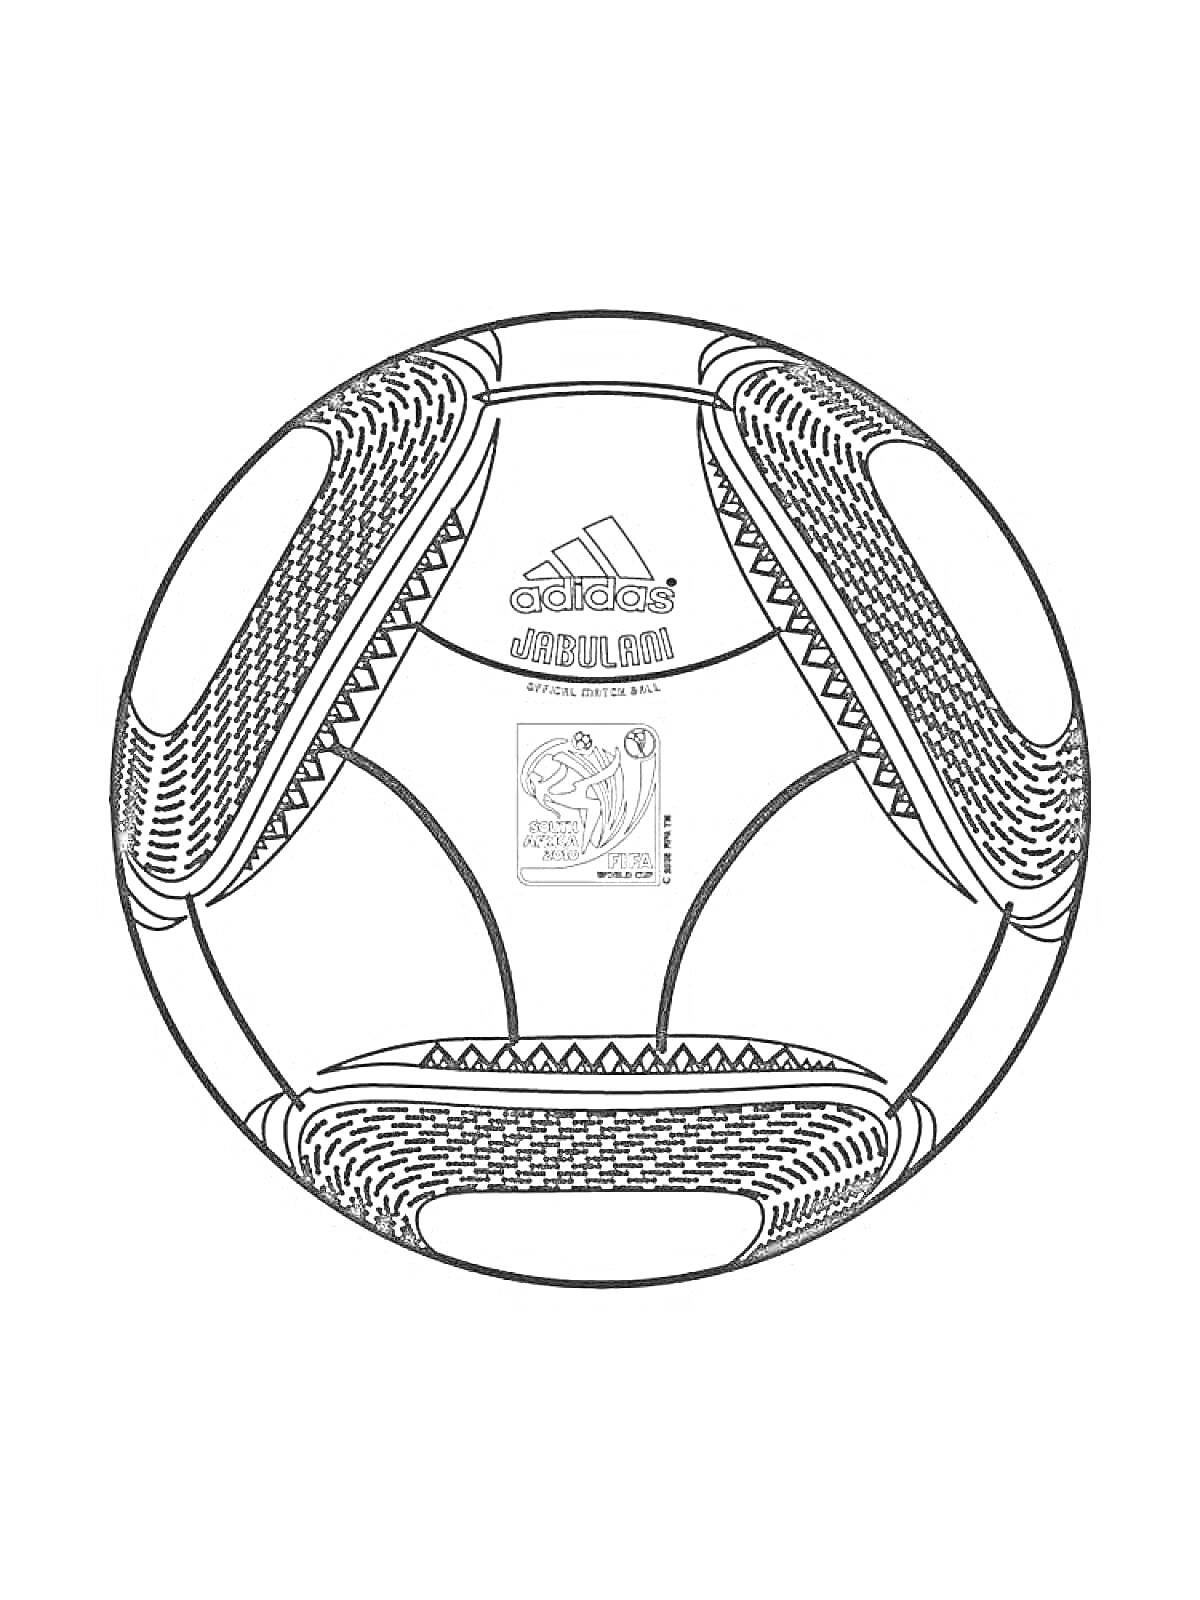 Футбольный мяч Adidas с логотипами и эмблемой